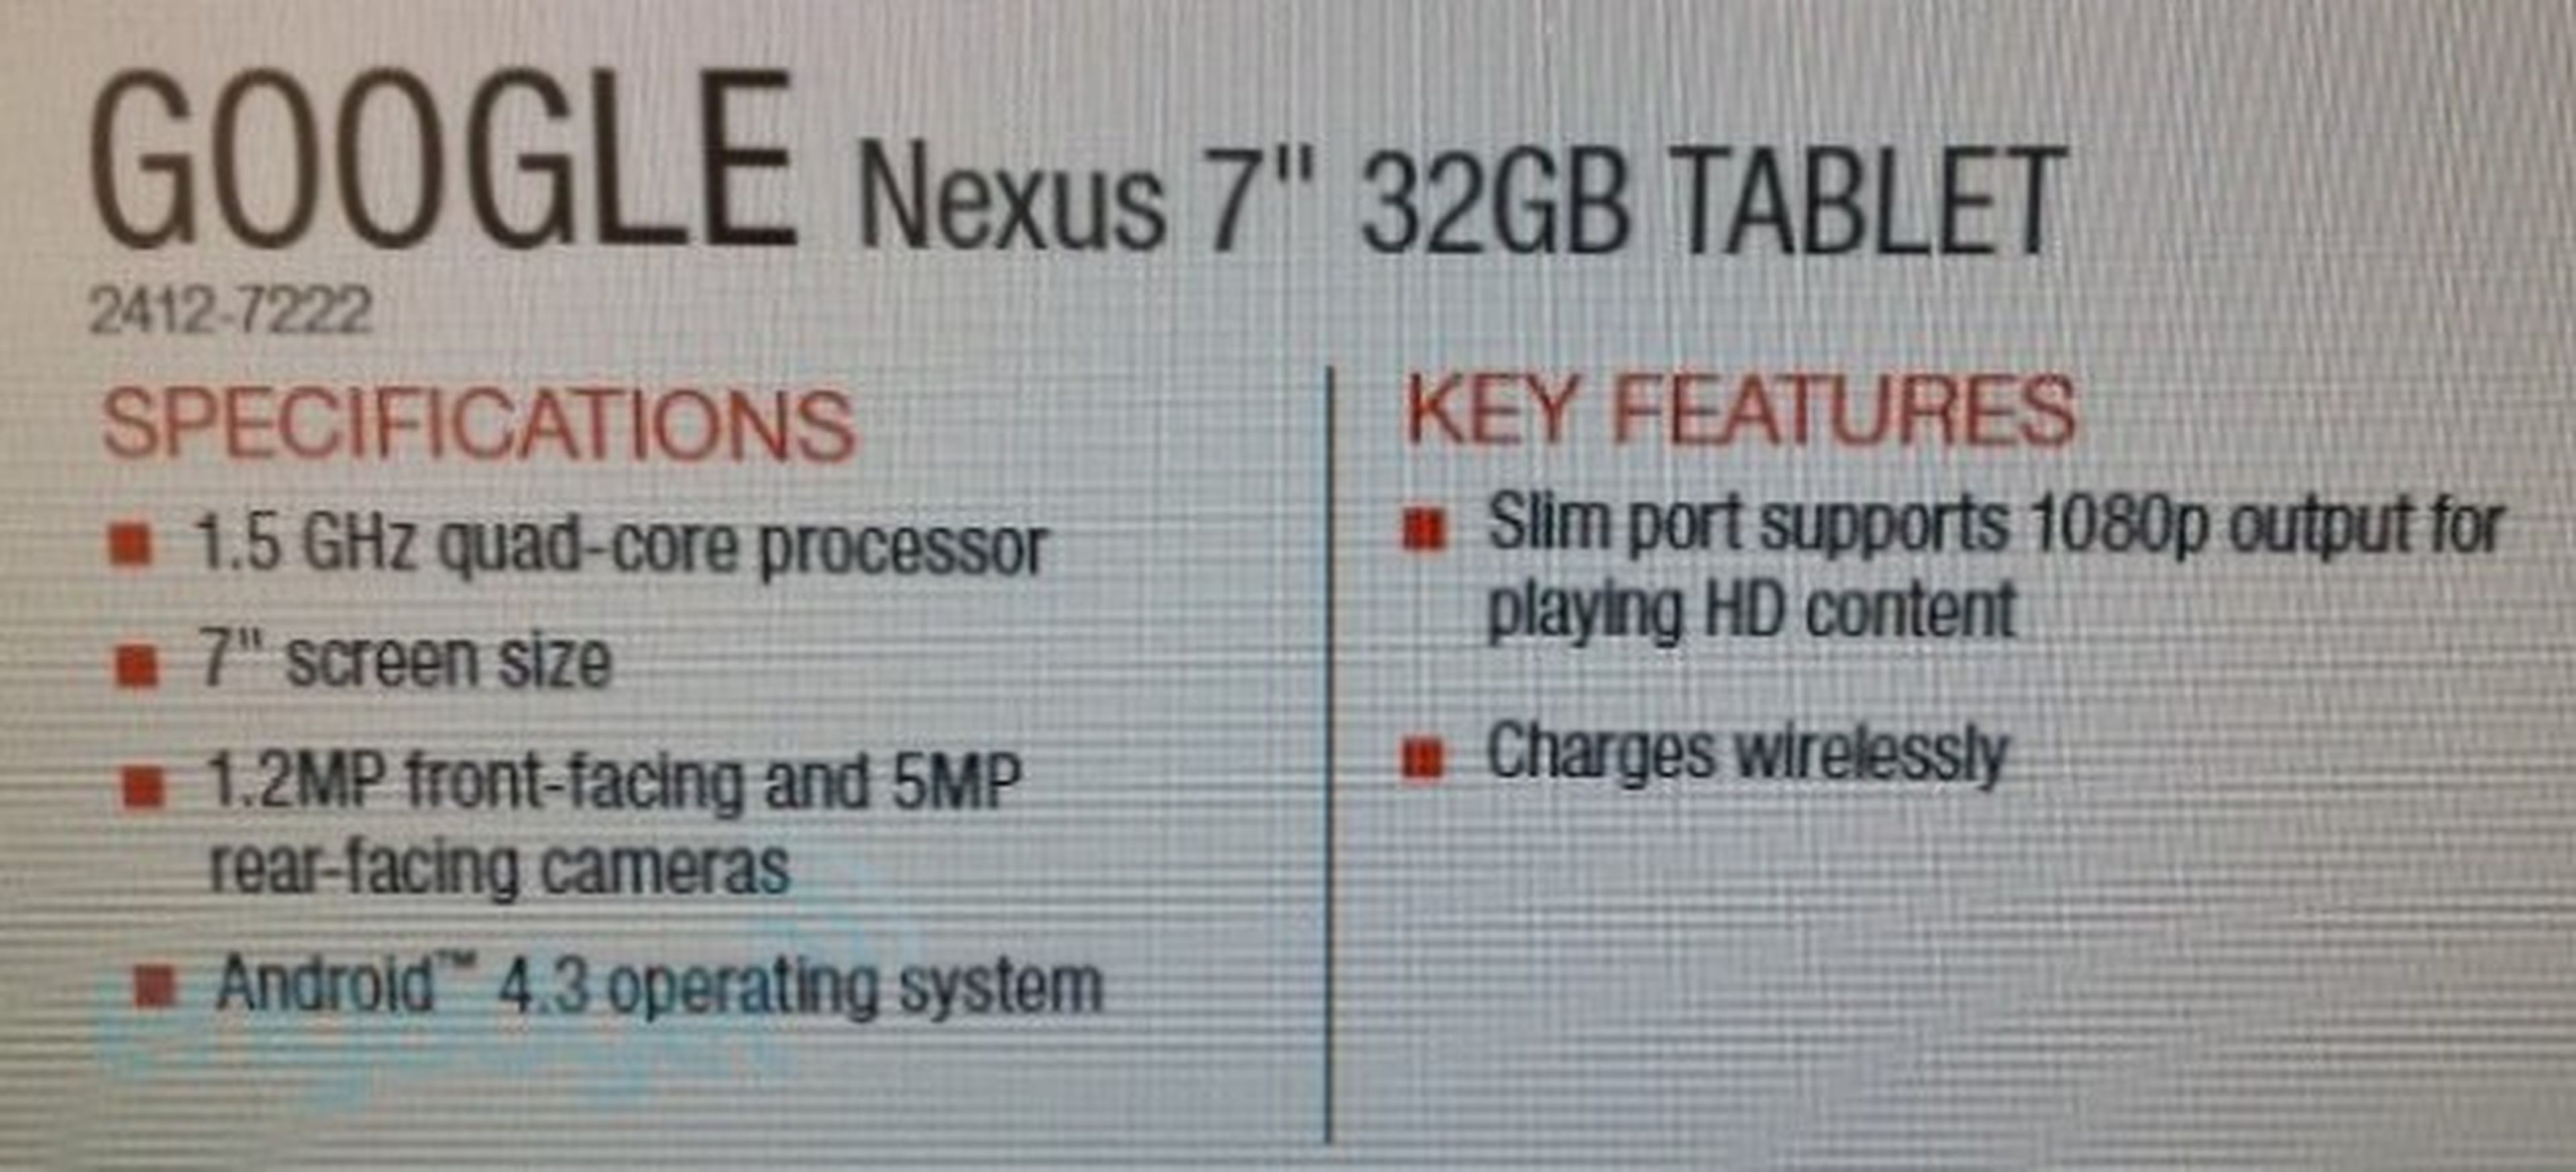 Especificaciones técnicas de la Nueva Nexus 7